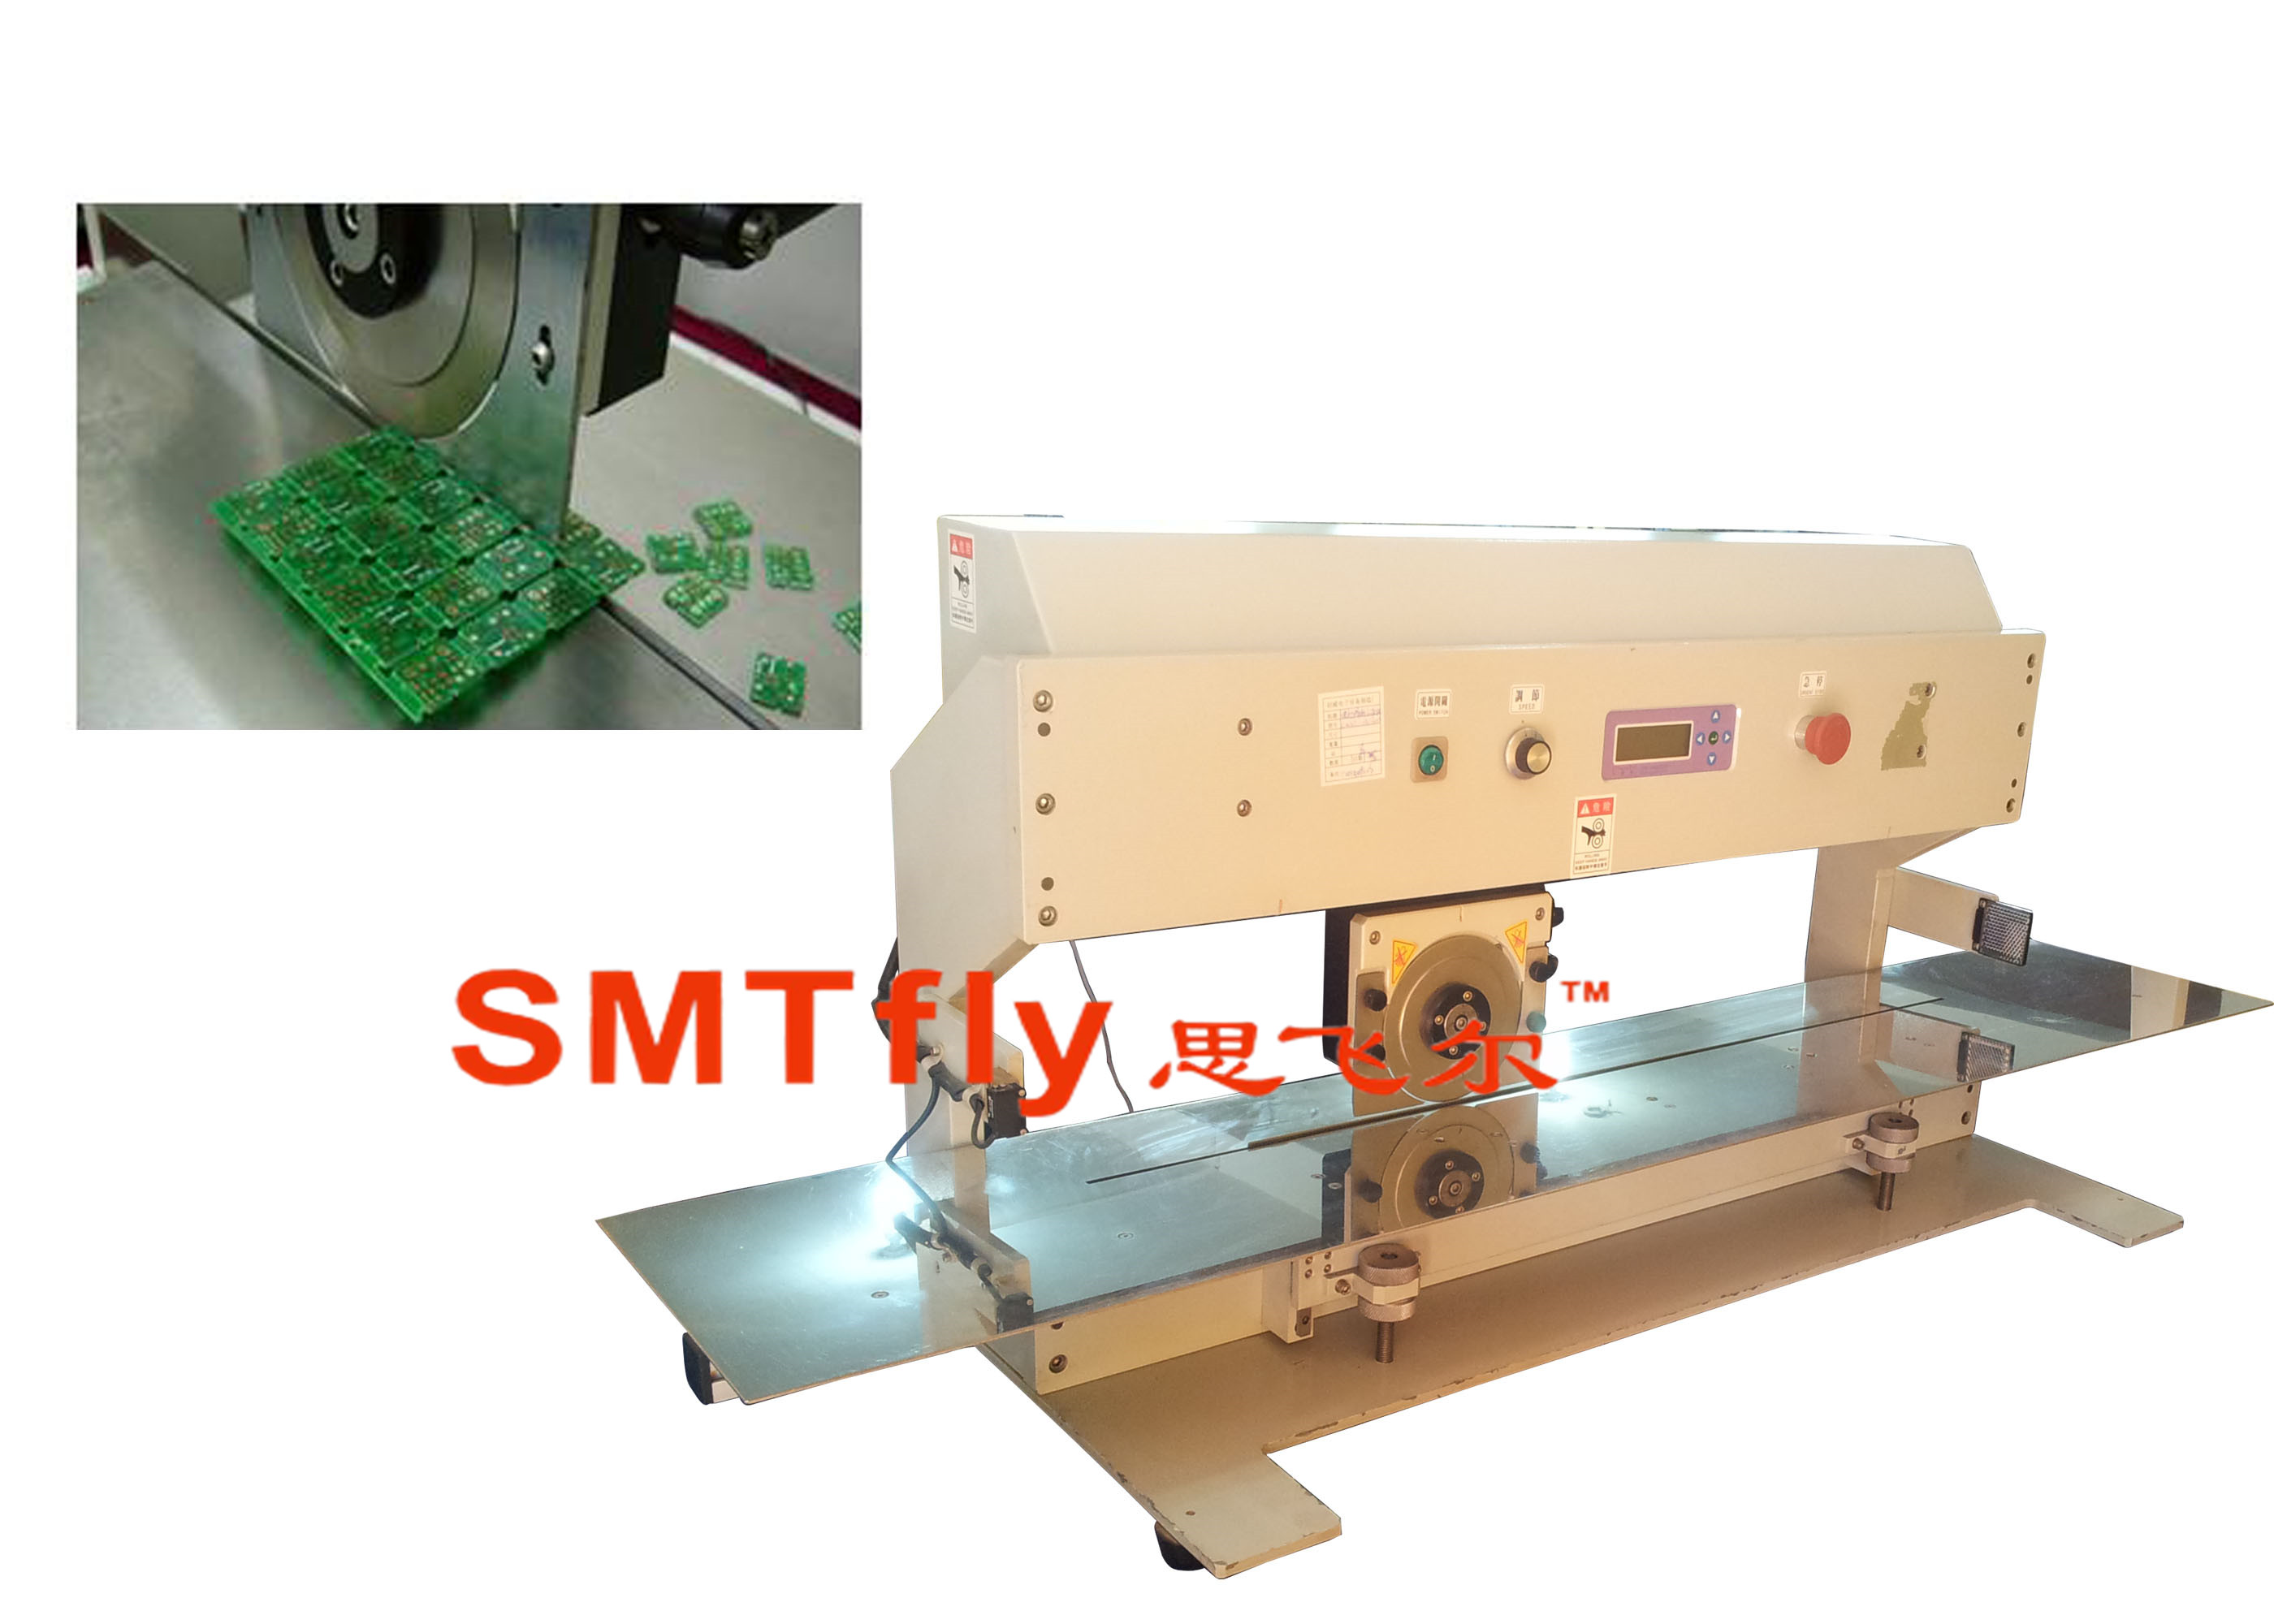 Flexible PCB Cutting Tool,SMTfly-1A